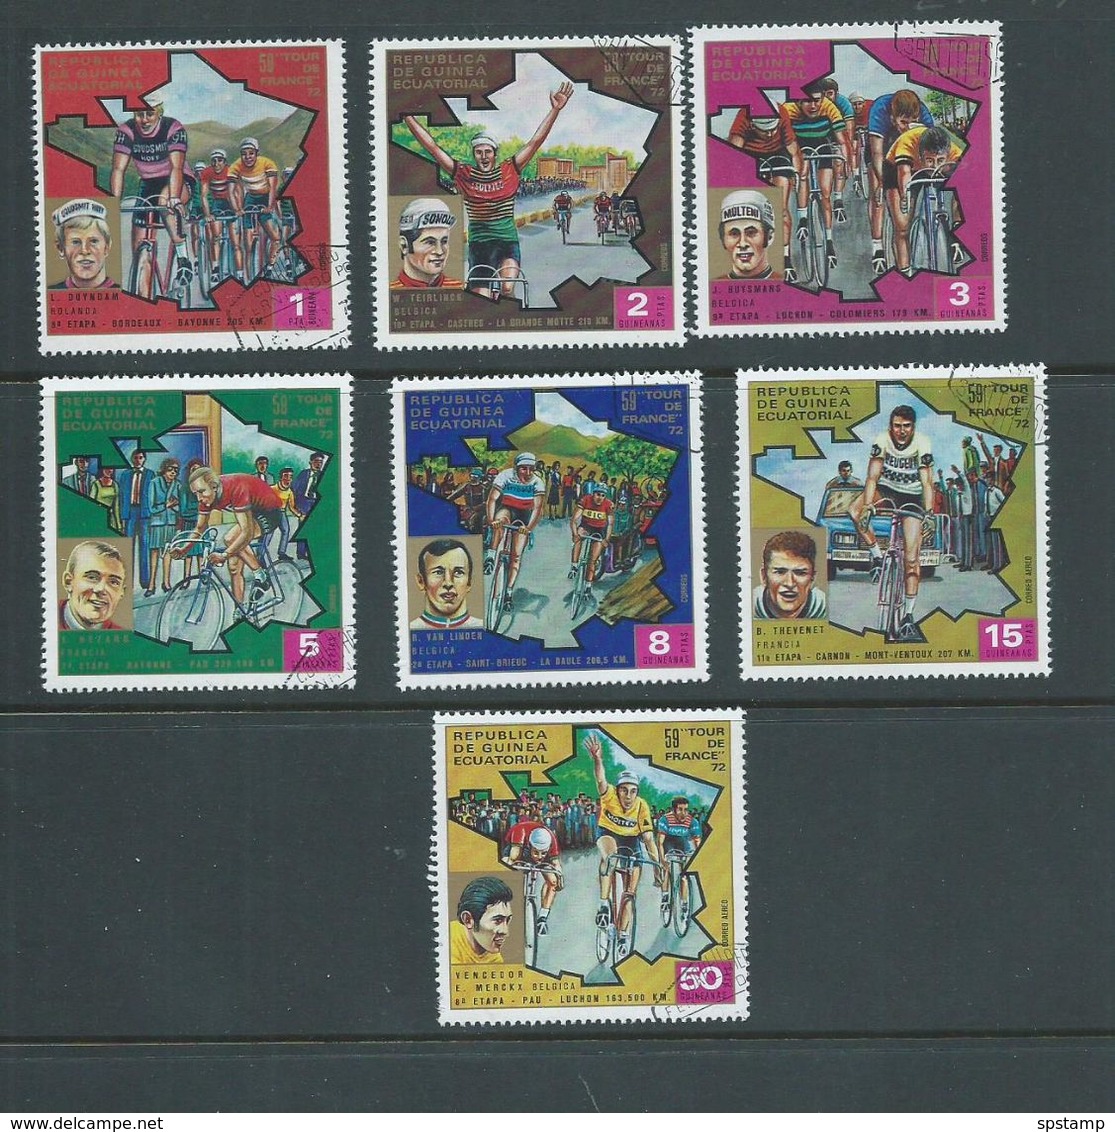 Equatorial Guinea 1973 Tour De France Bicycle Race Set 7 FU - VTT